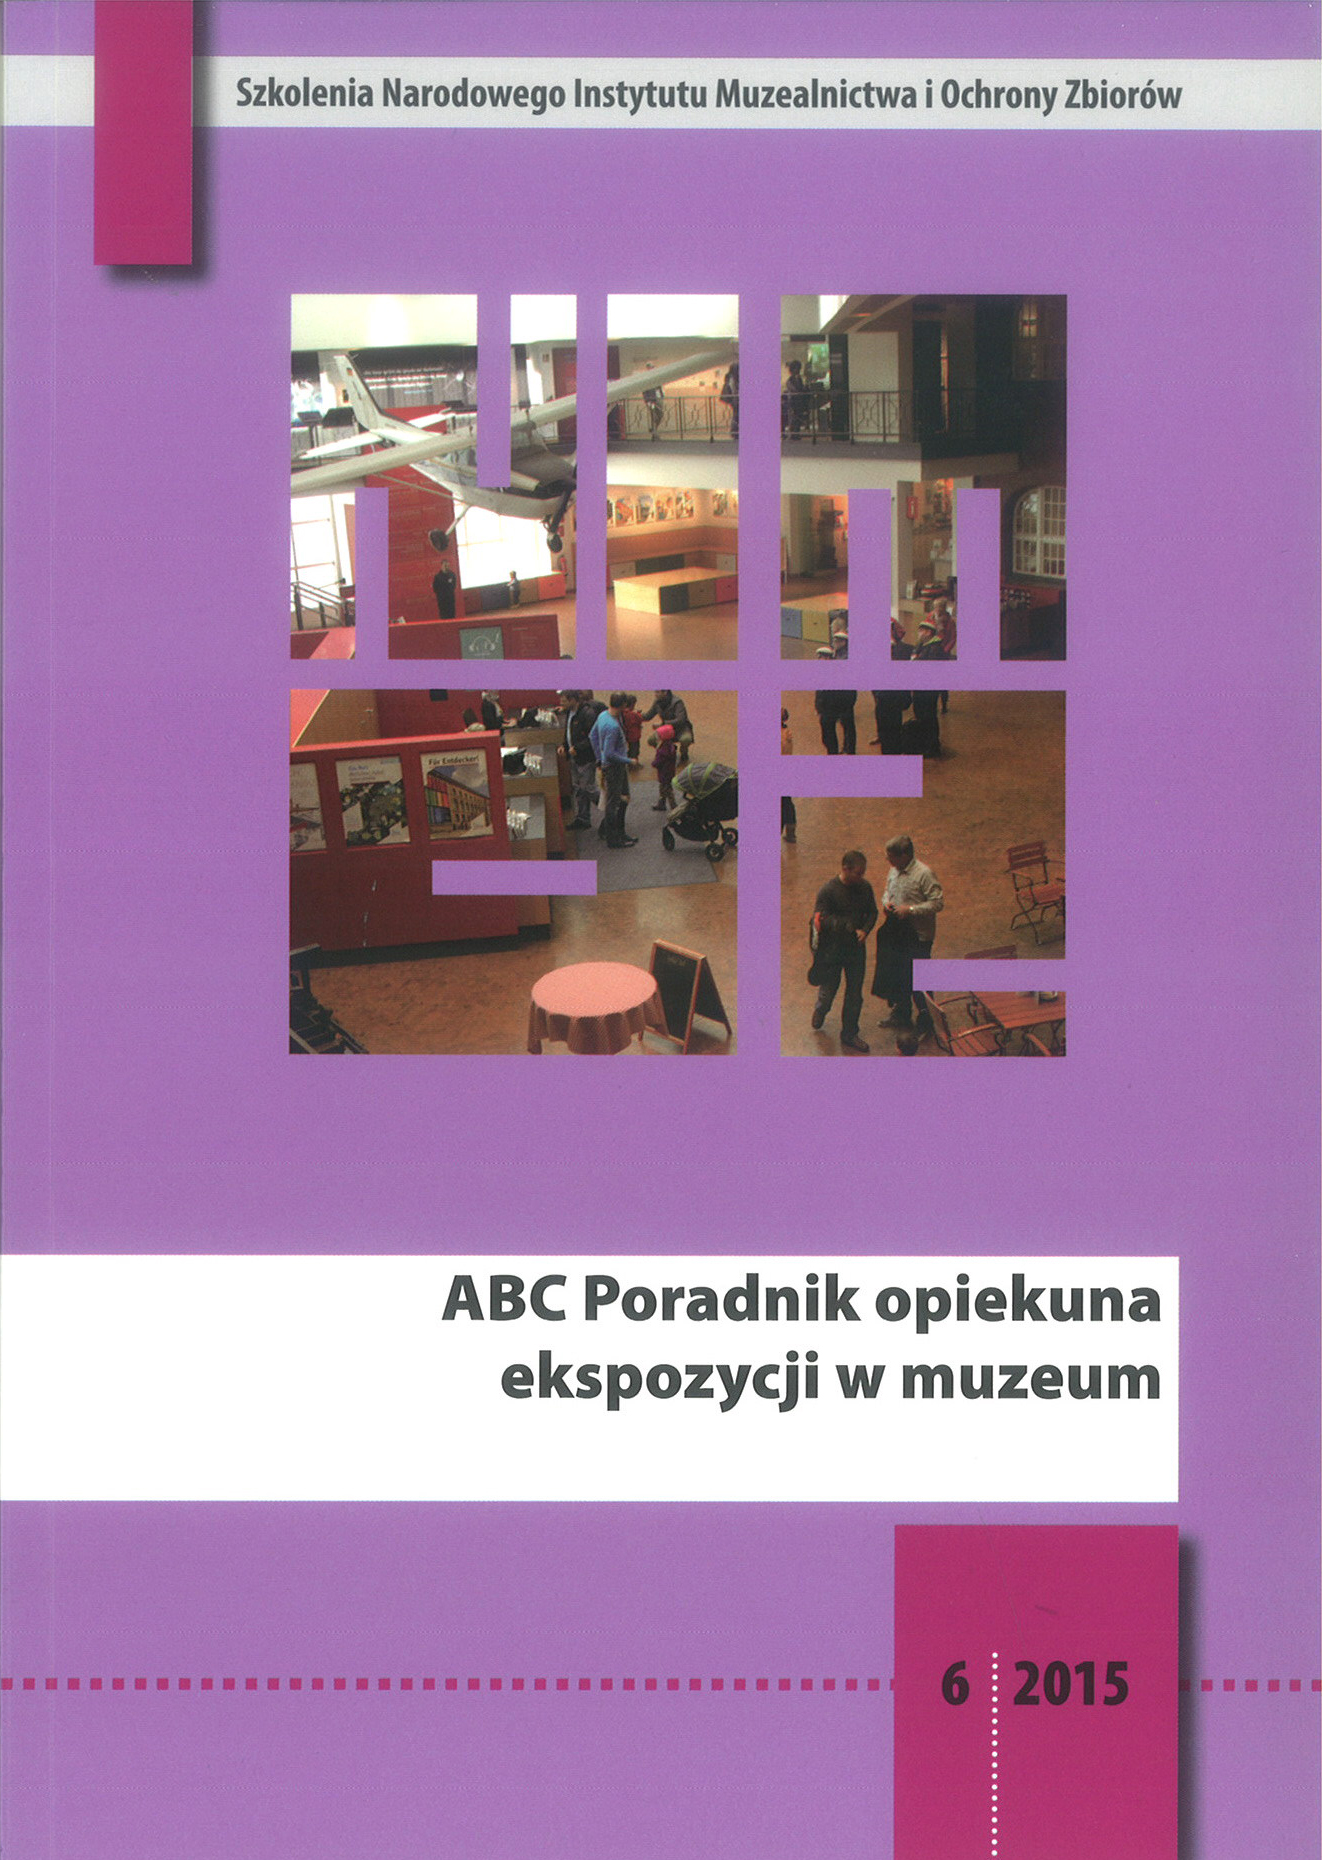 ABC Poradnik opiekuna ekspozycji w muzeum